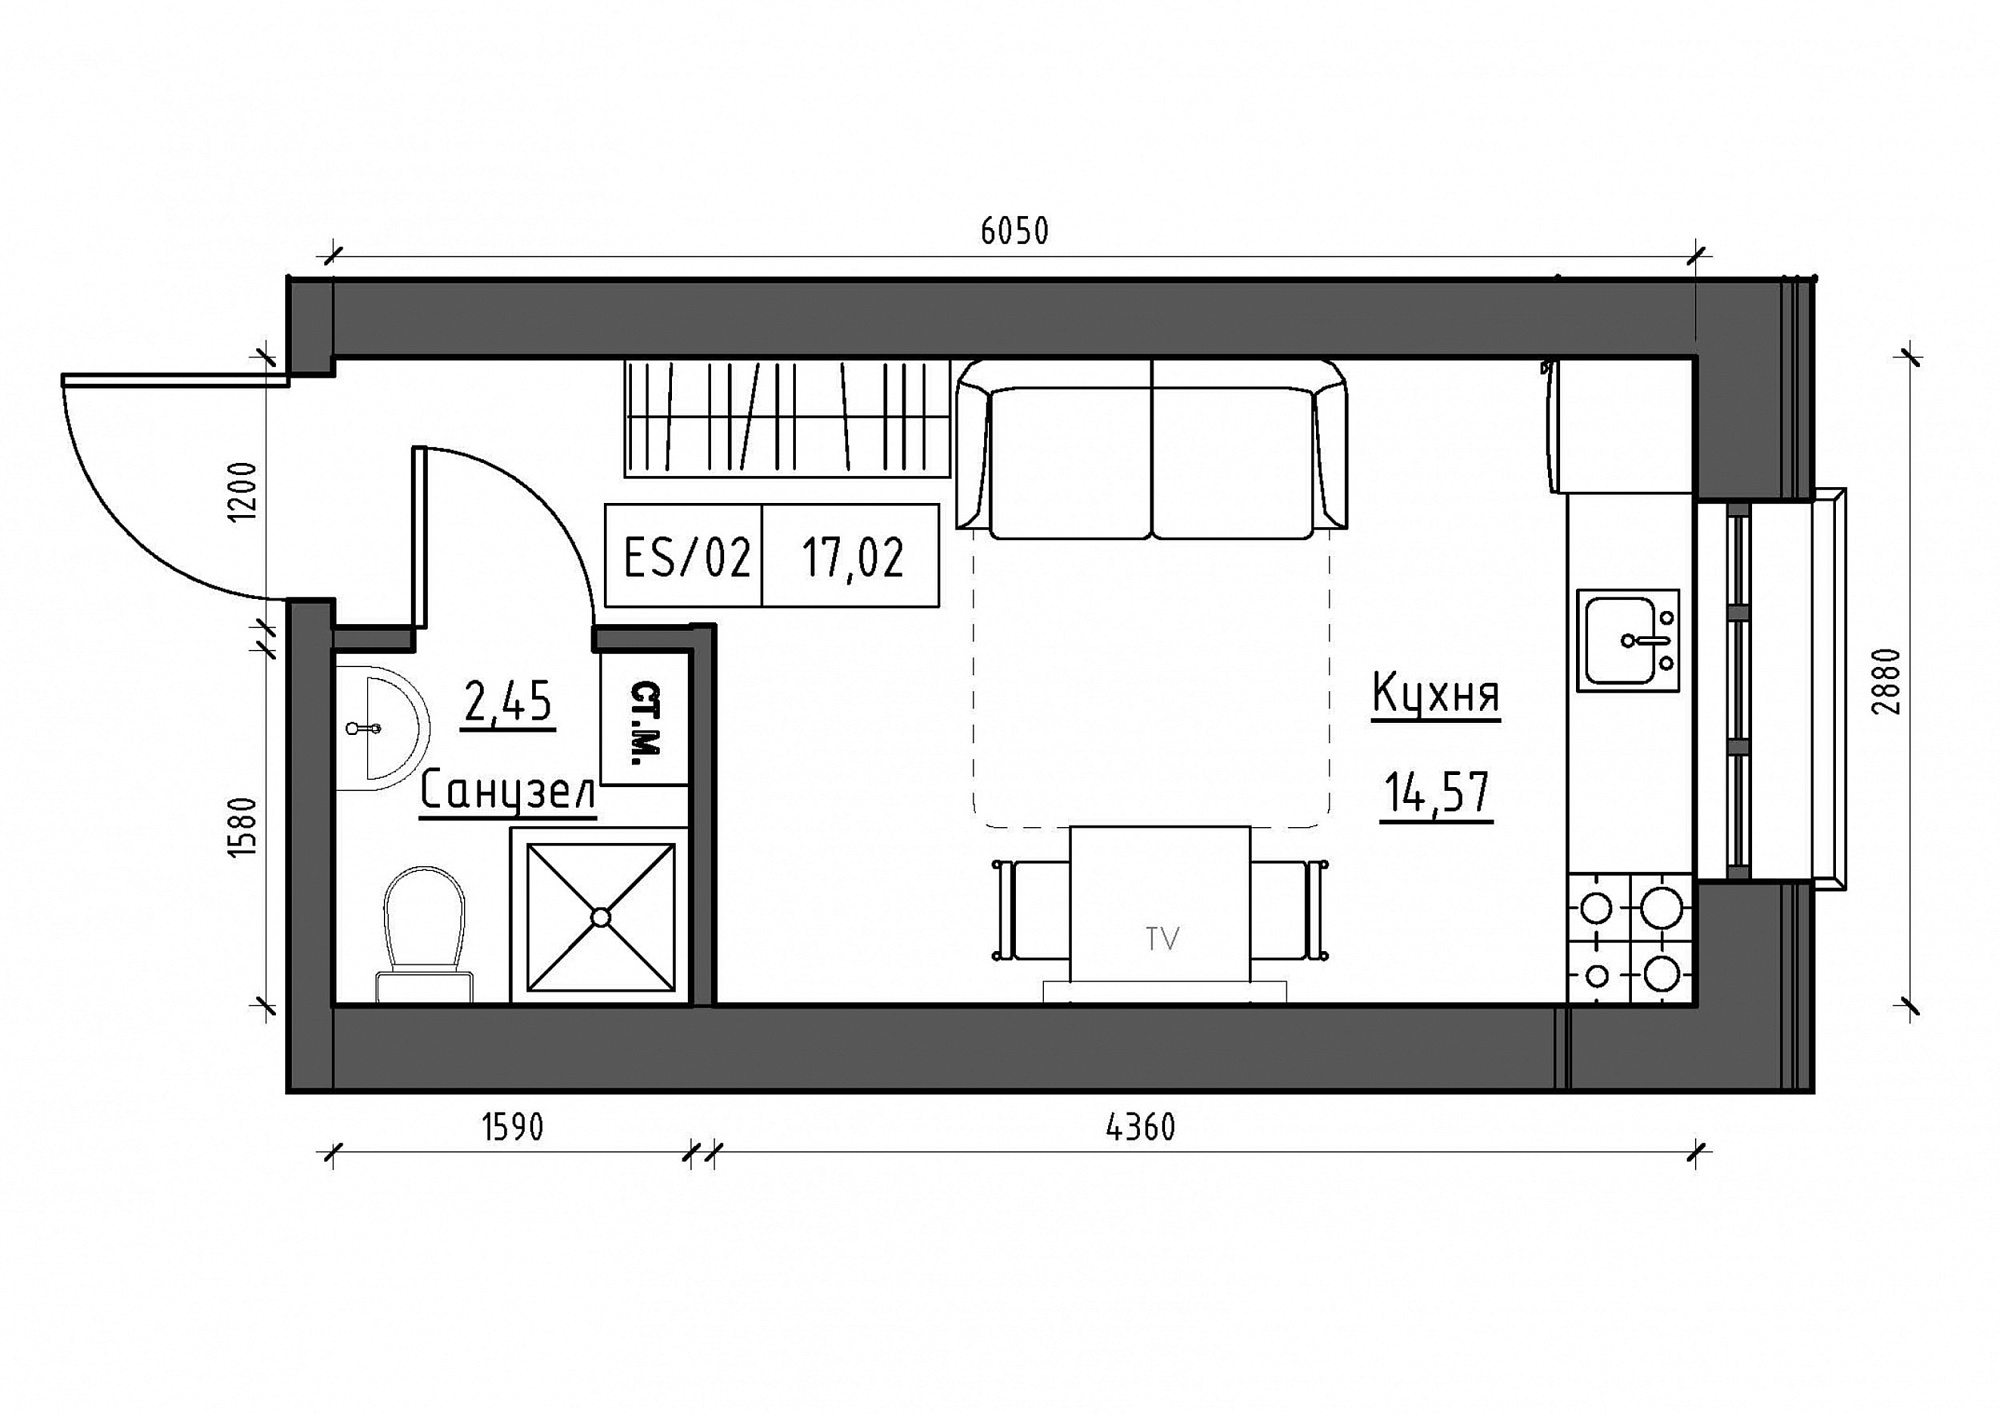 Планування Smart-квартира площею 17.02м2, KS-012-04/0014.